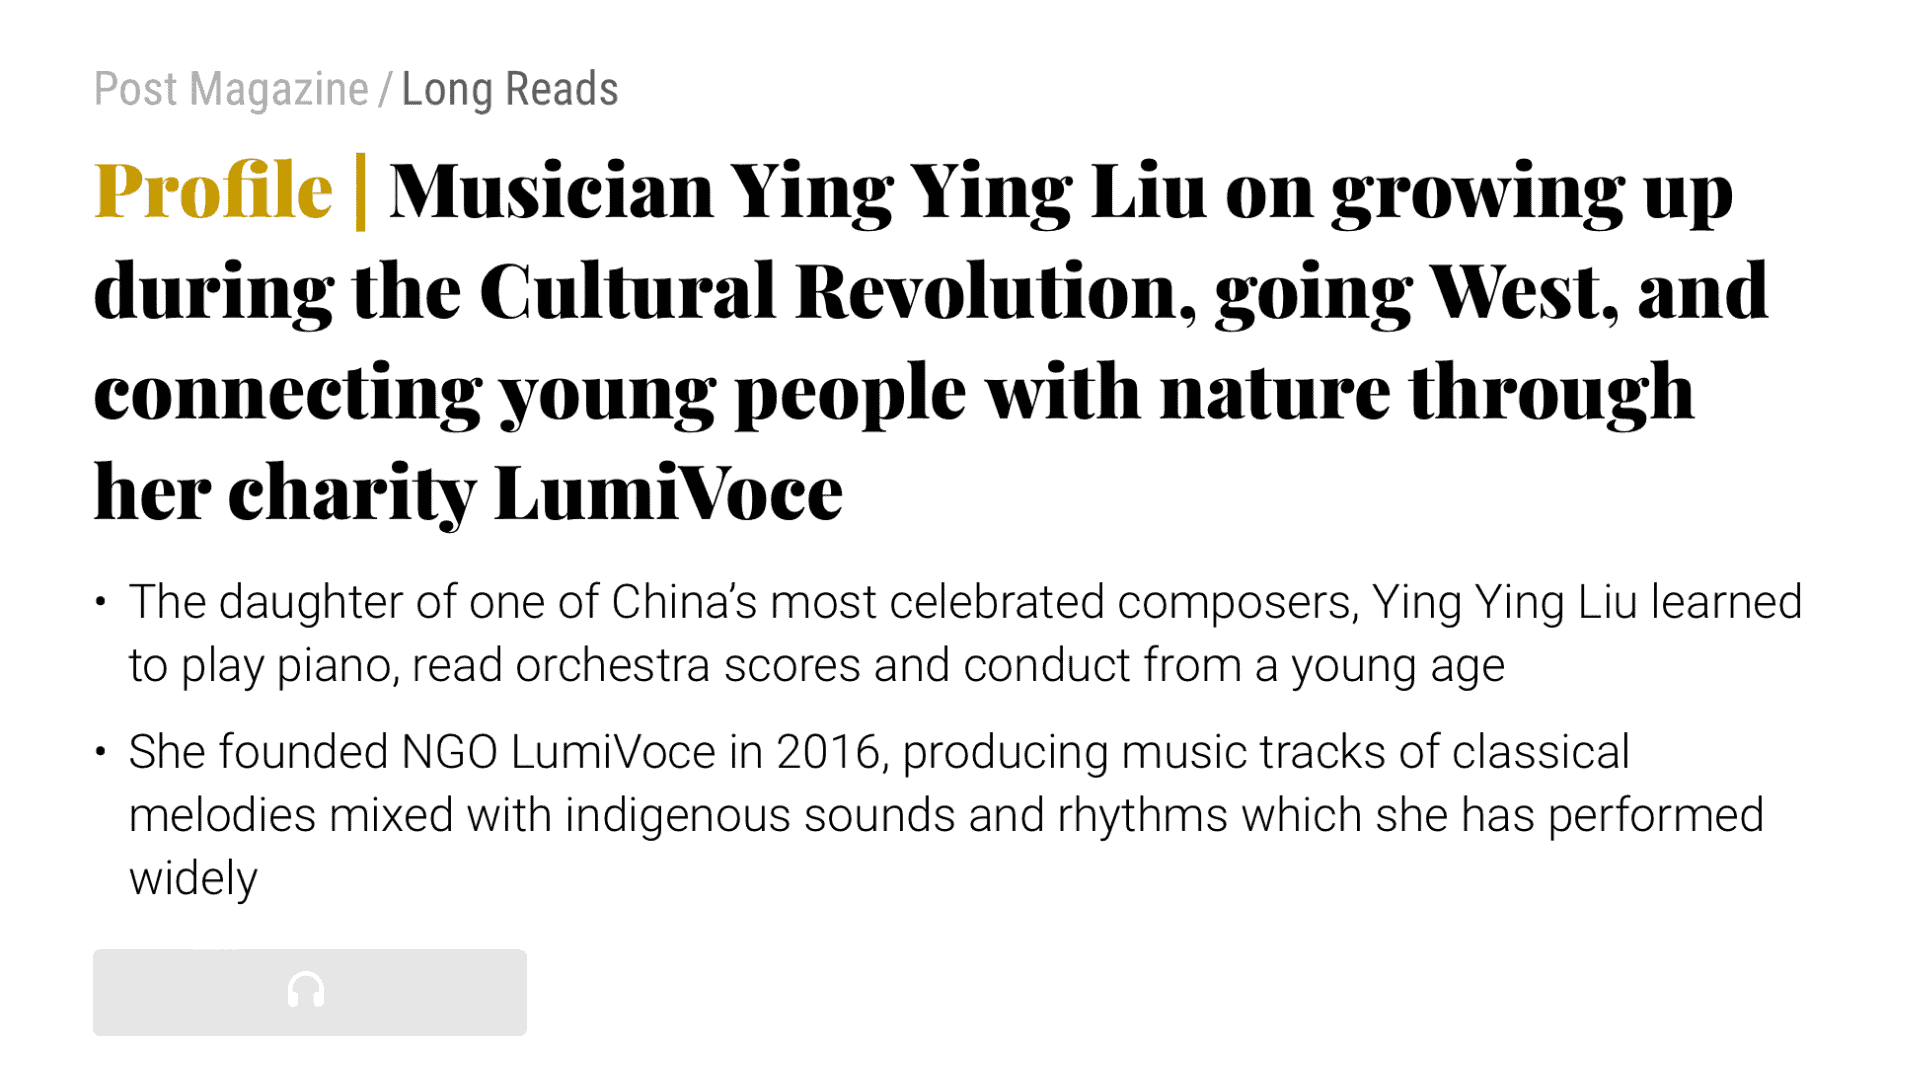 南華早報音樂家劉瑩瑩講述文革期間的成長、去西方以及透過她的慈善機構 LumiVoce 將年輕人與自然聯繫起來